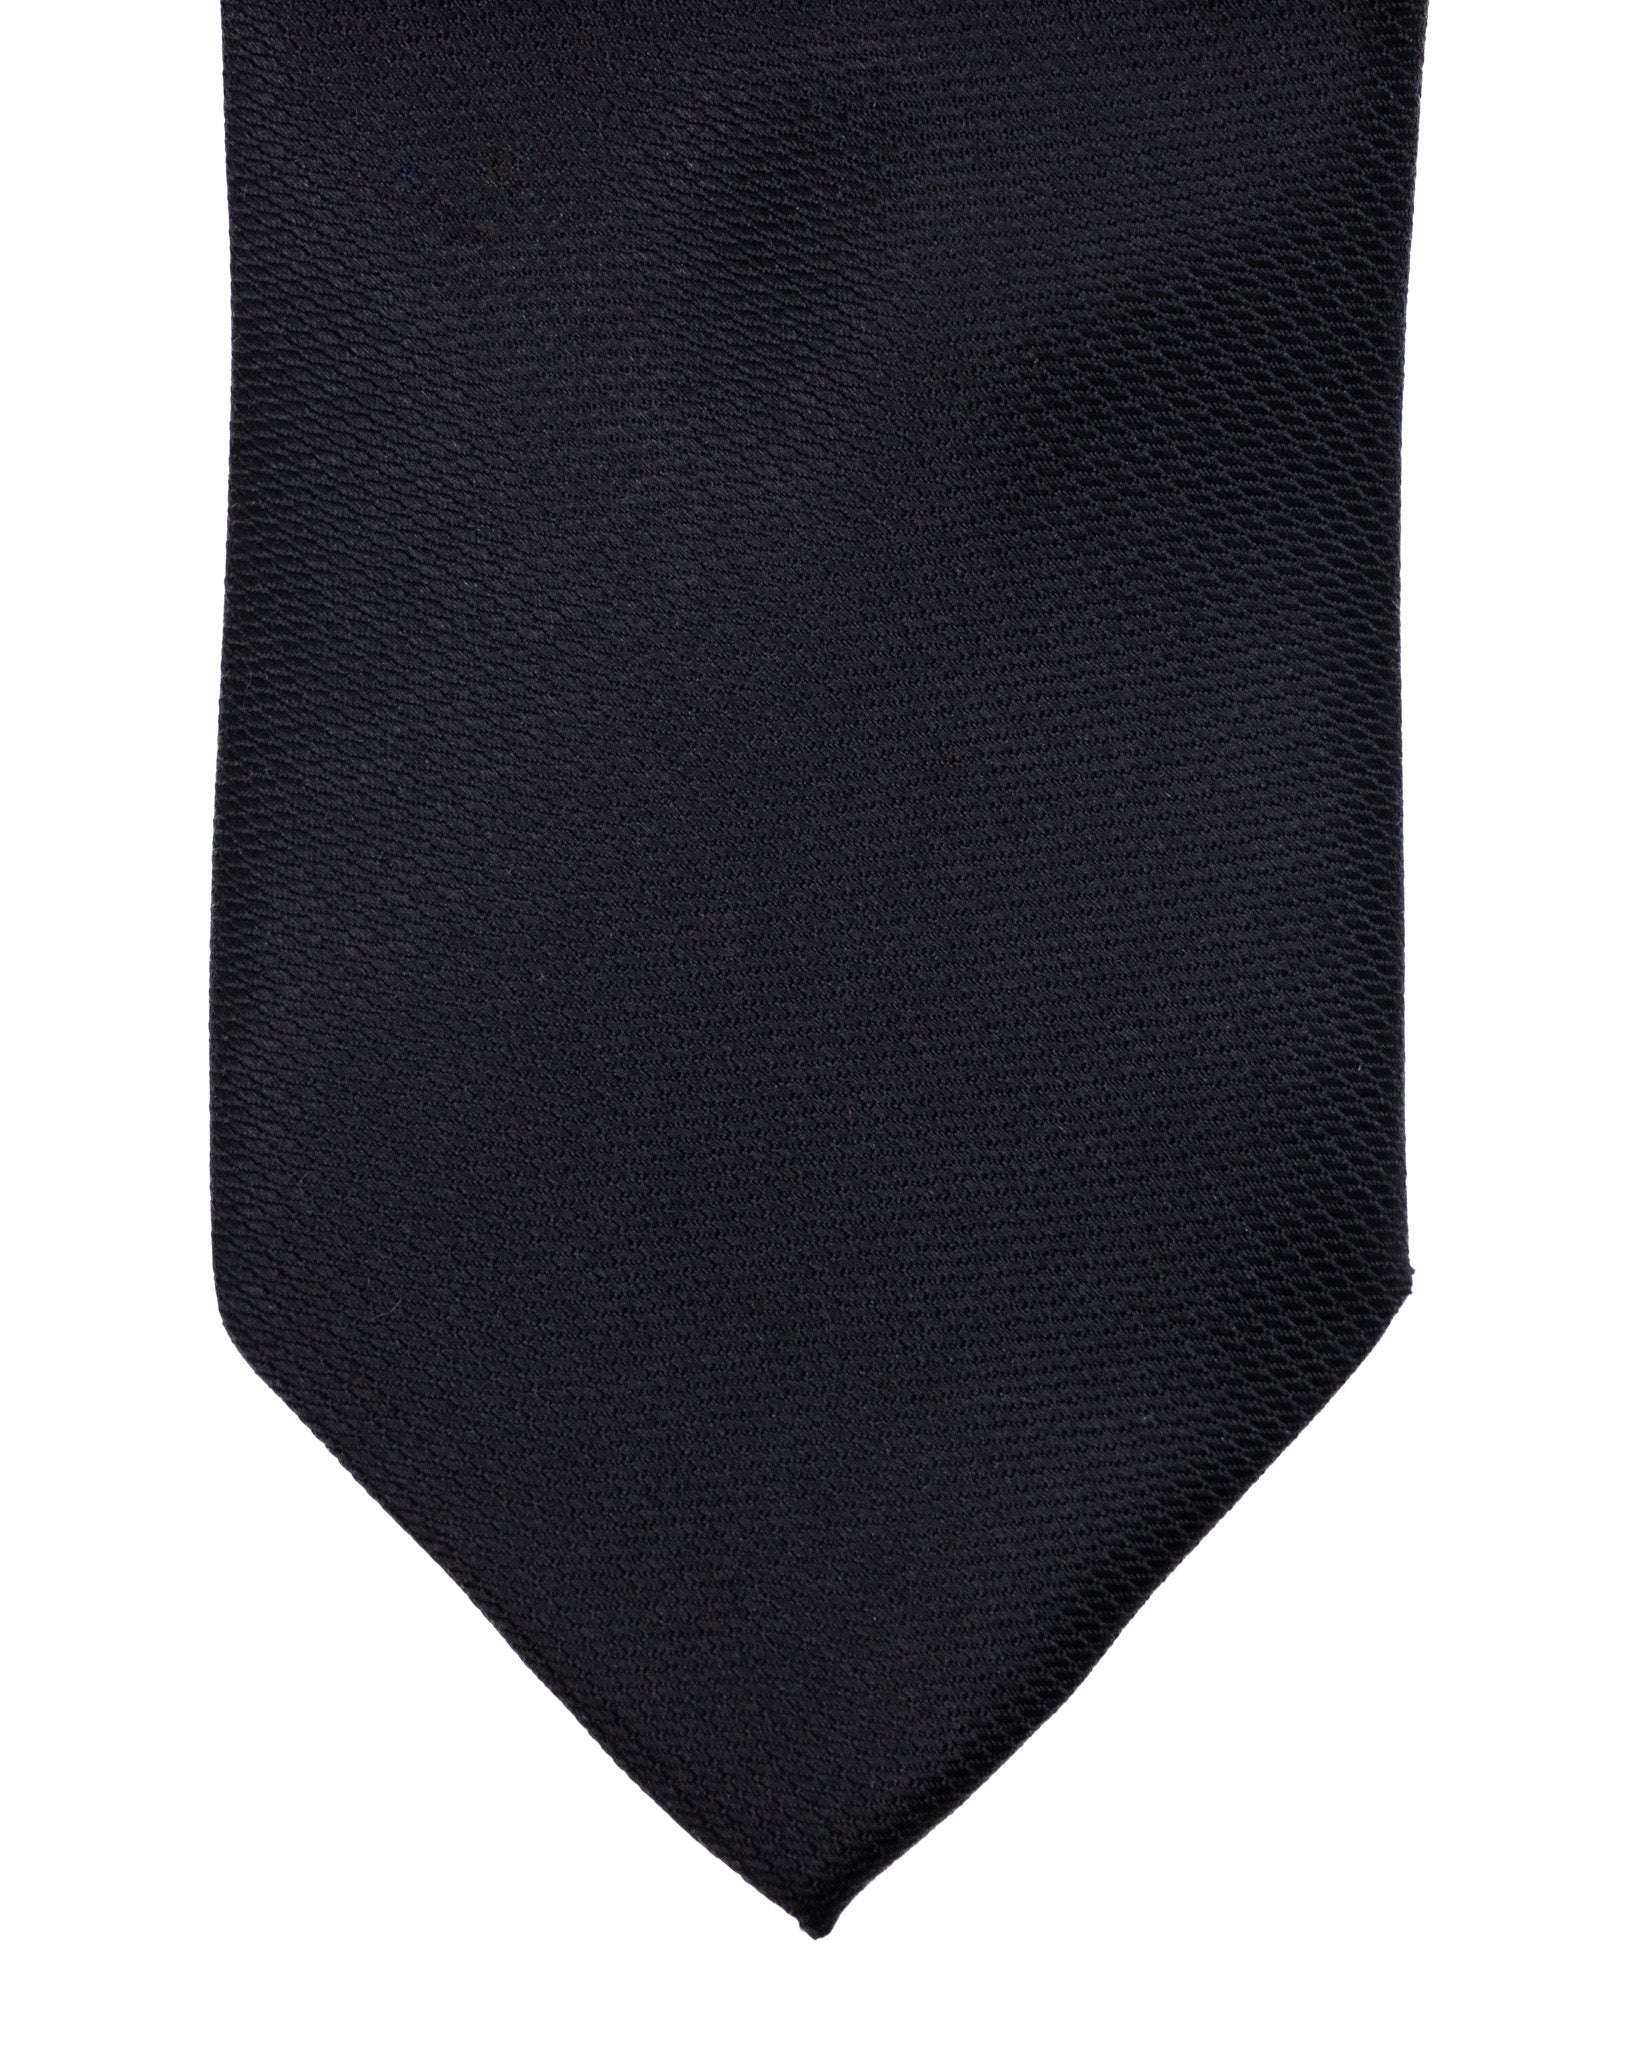 Cravatta - in seta armaturata nera